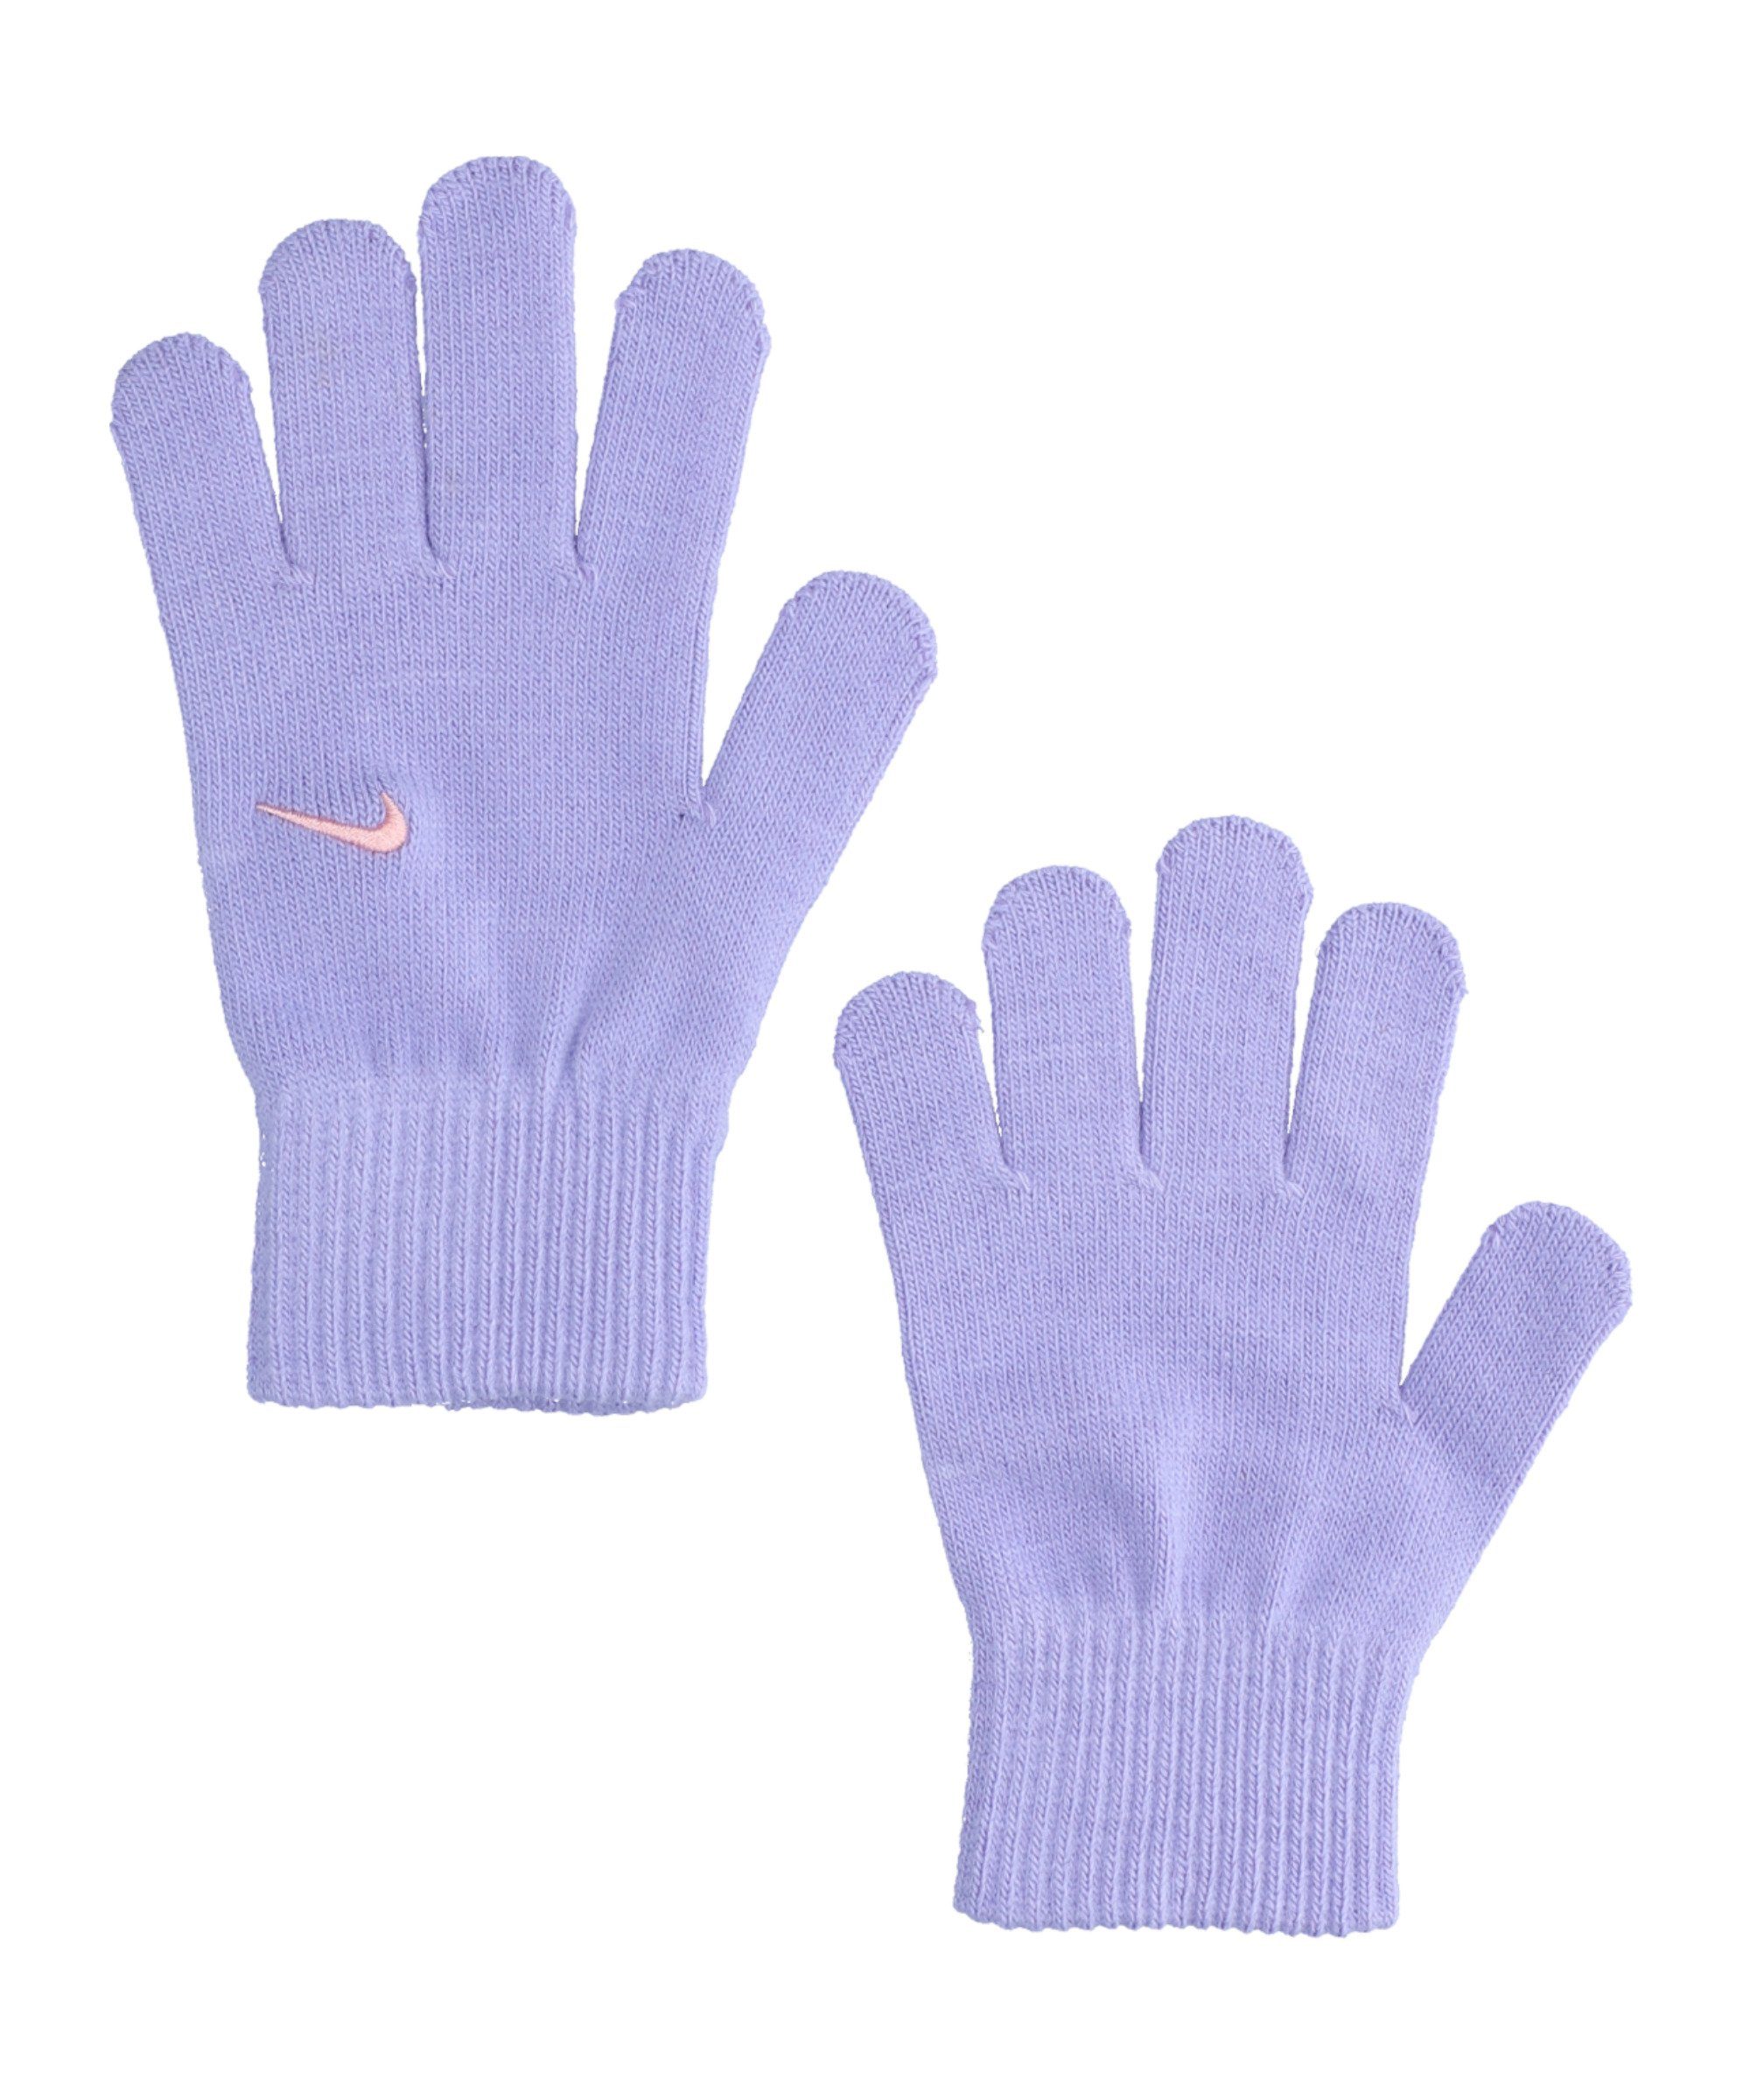 Kids Nike Handschuhe lila Swoosh Knit 2.0 Feldspielerhandschuhe